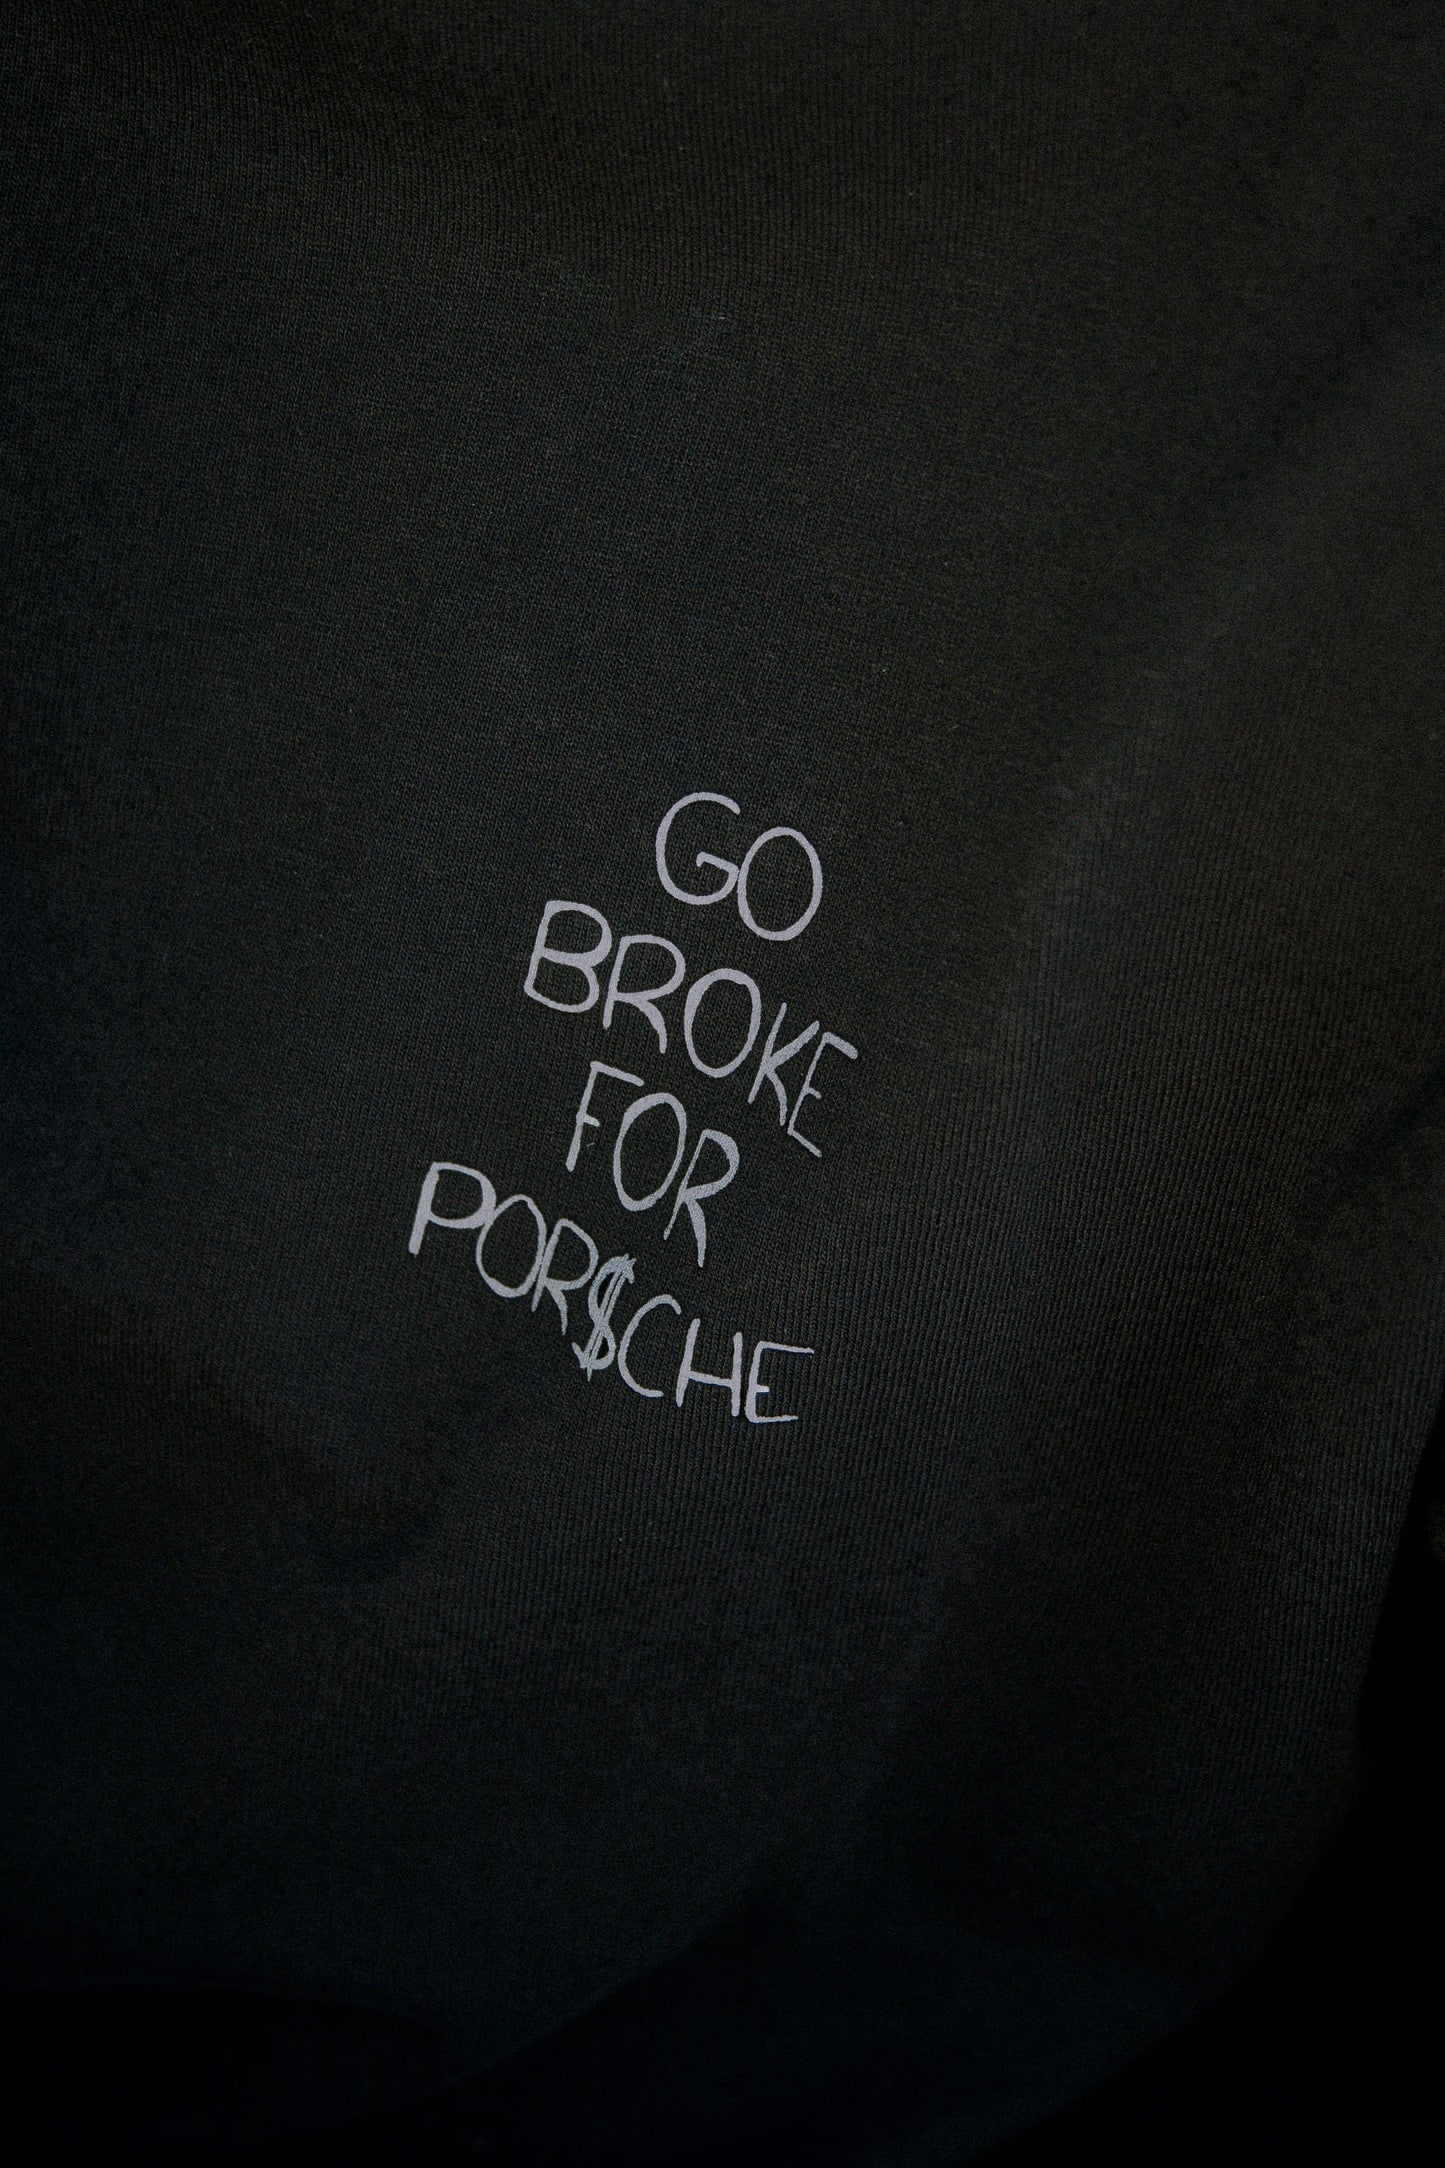 T-Shirt "Go Broke For Porsche"